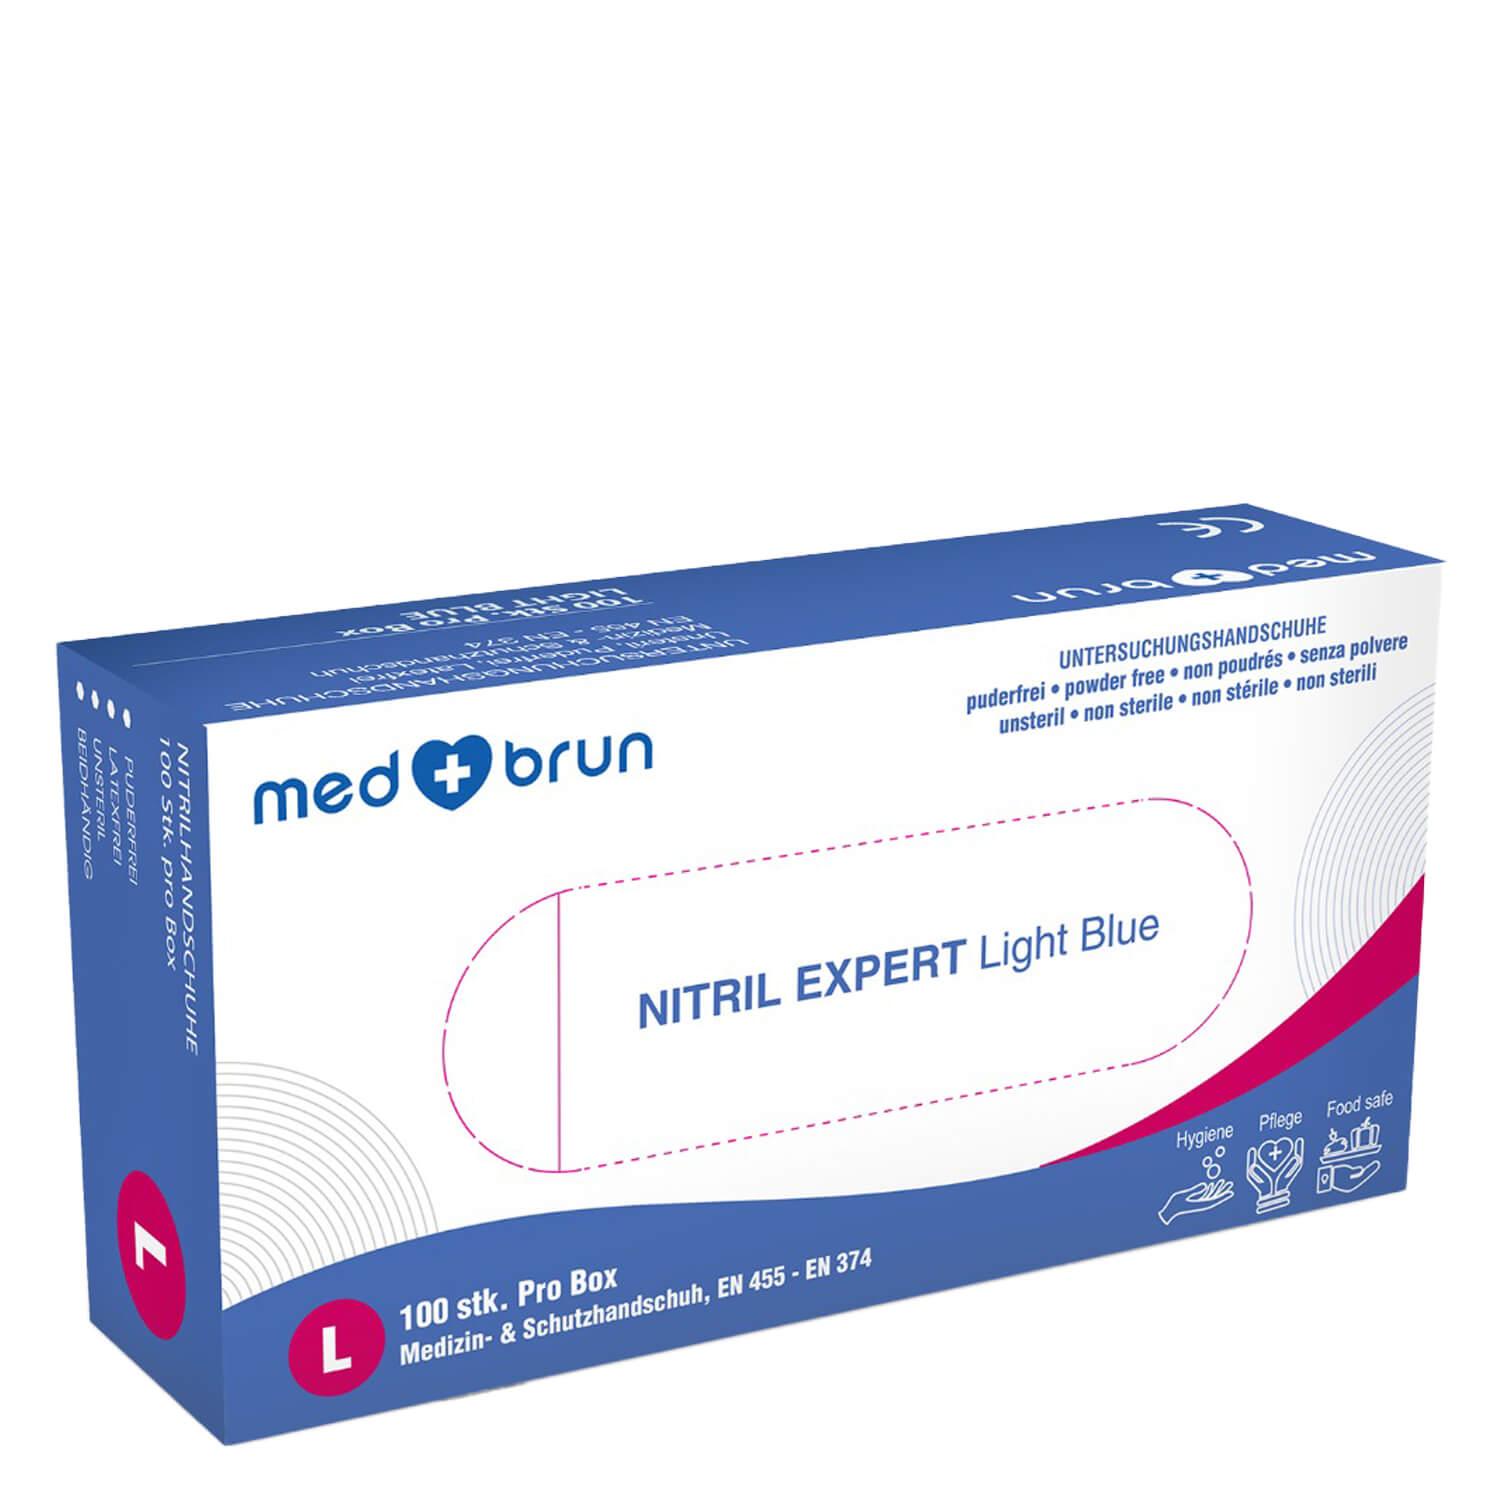 MedBrun - Nitrile Gloves Expert Light Blue